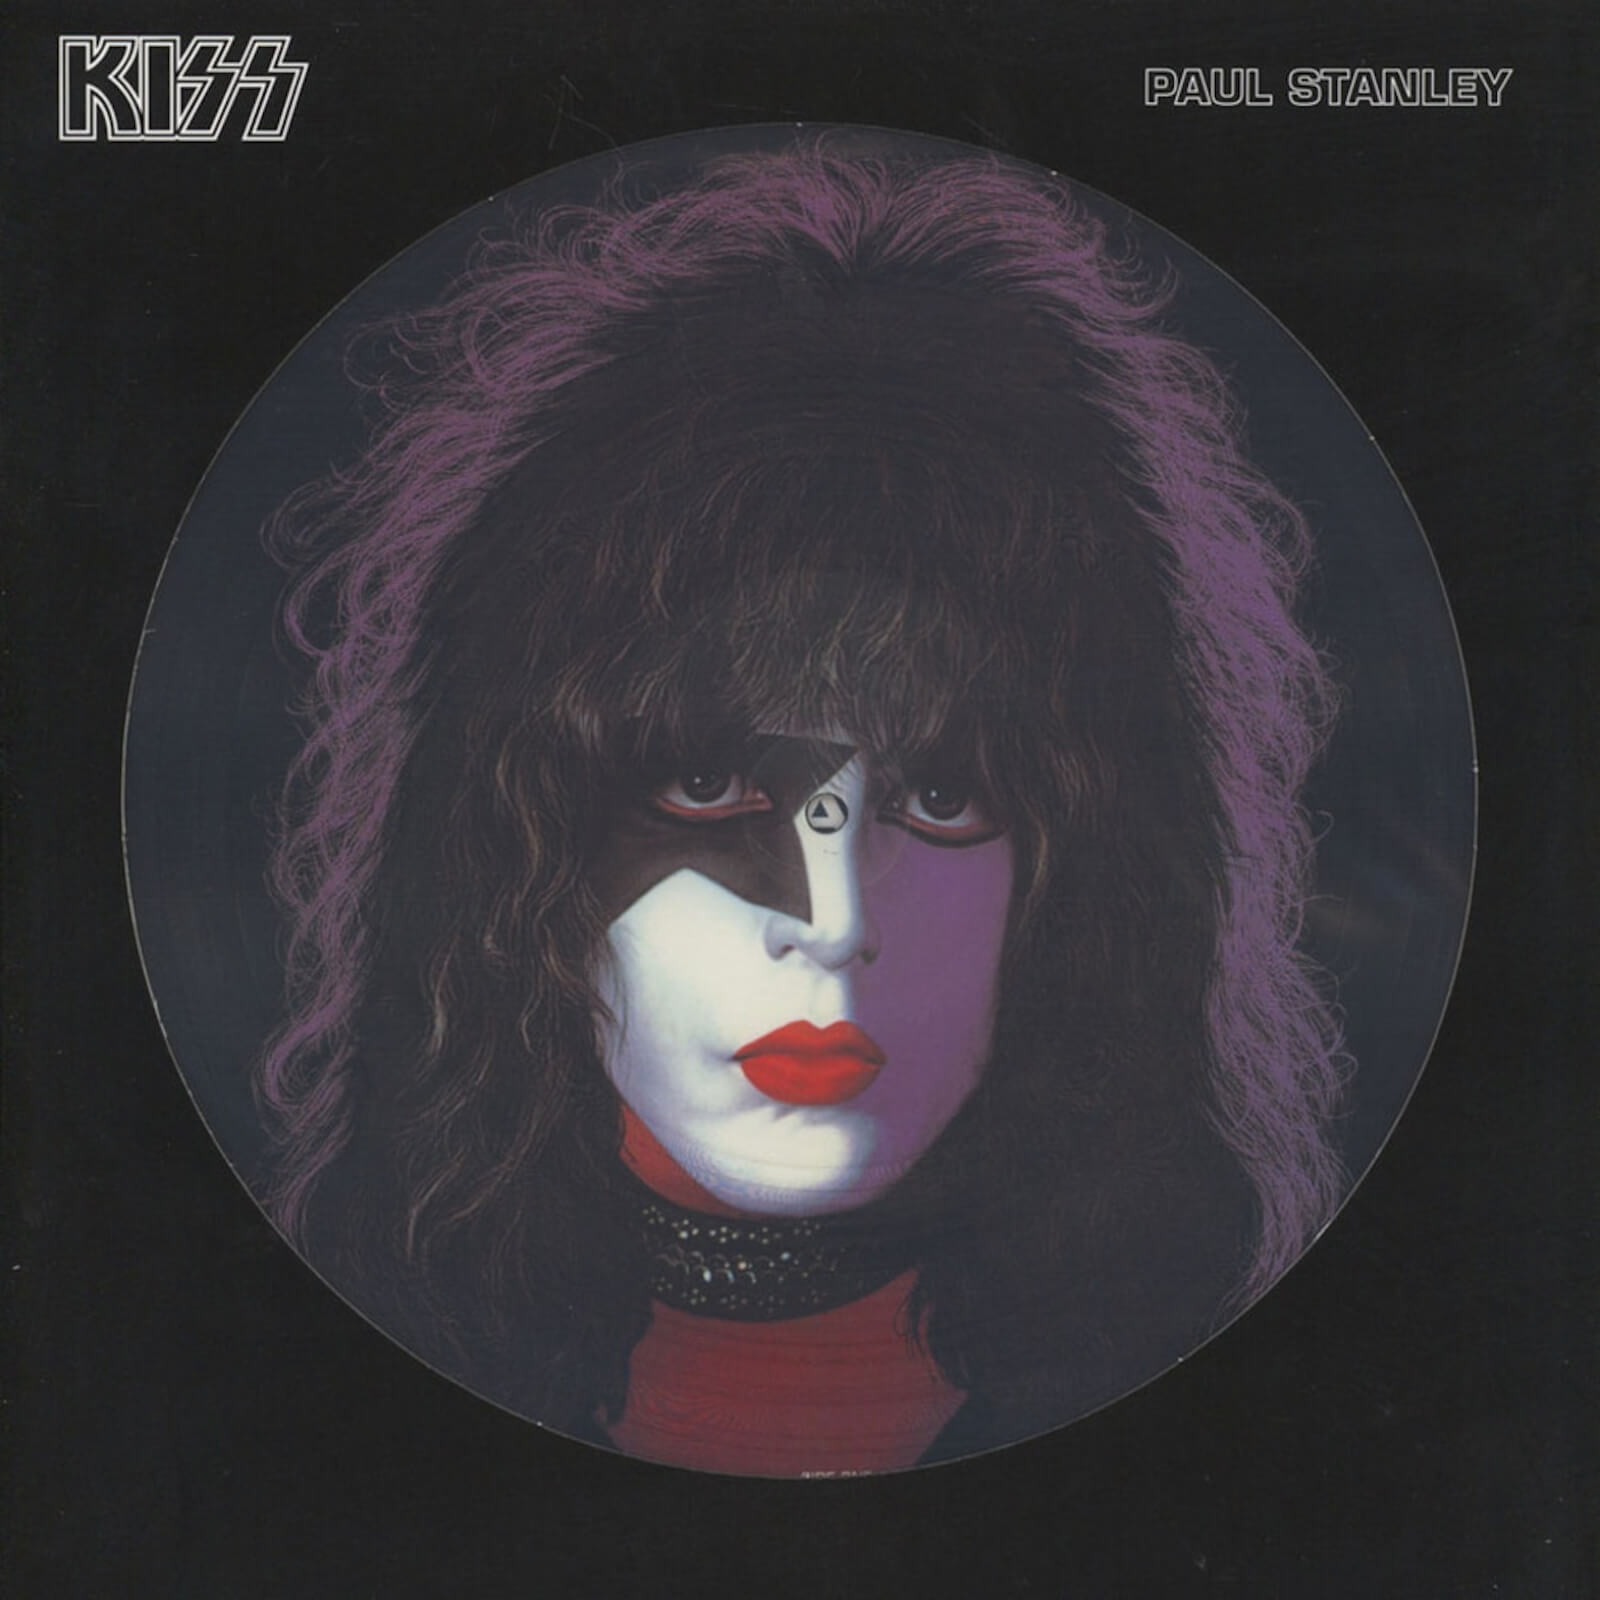 Paul Stanley (KISS) - Paul Stanley Picture Disc LP